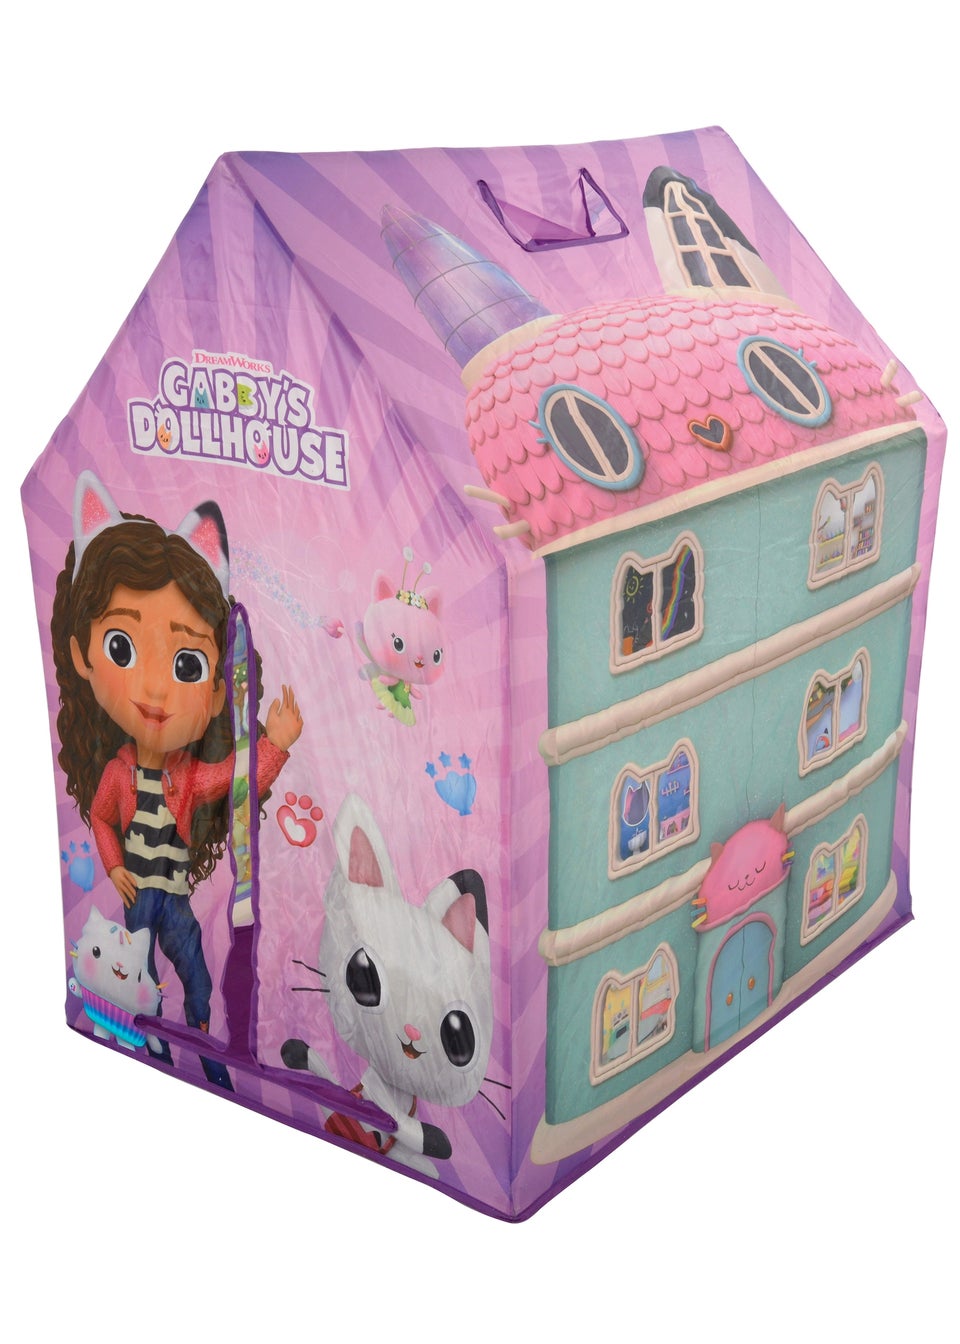 Gabby's Dollhouse Play House Tent